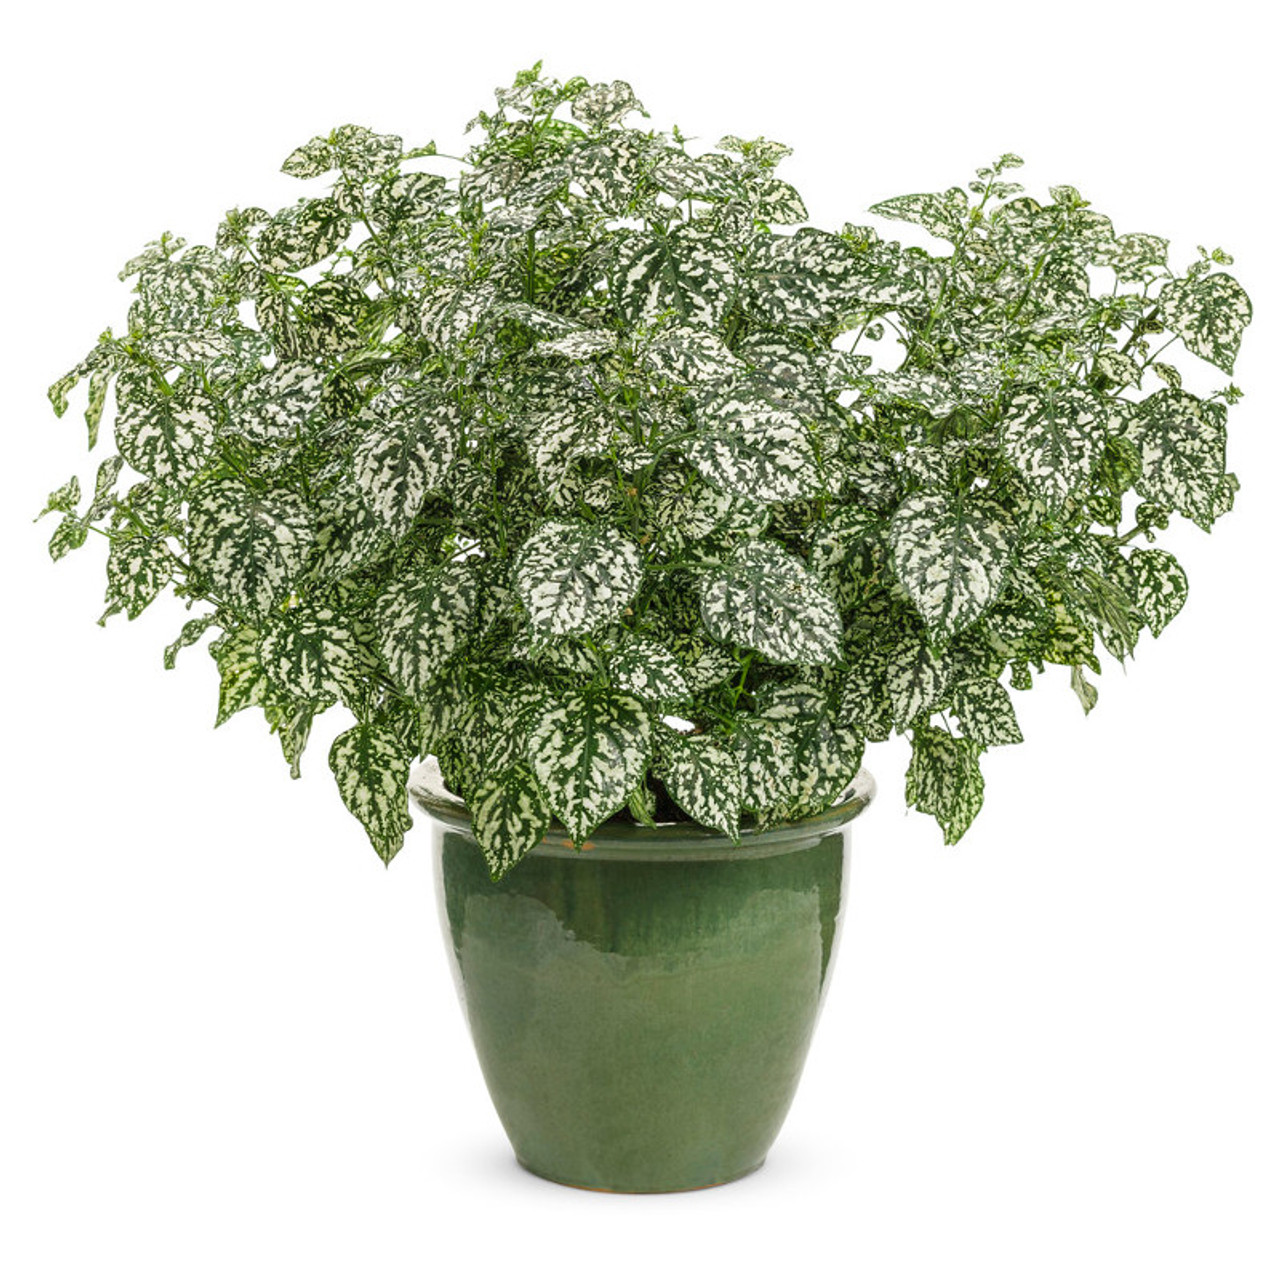 Hippo® White Polka Dot Plant | Plant Addicts